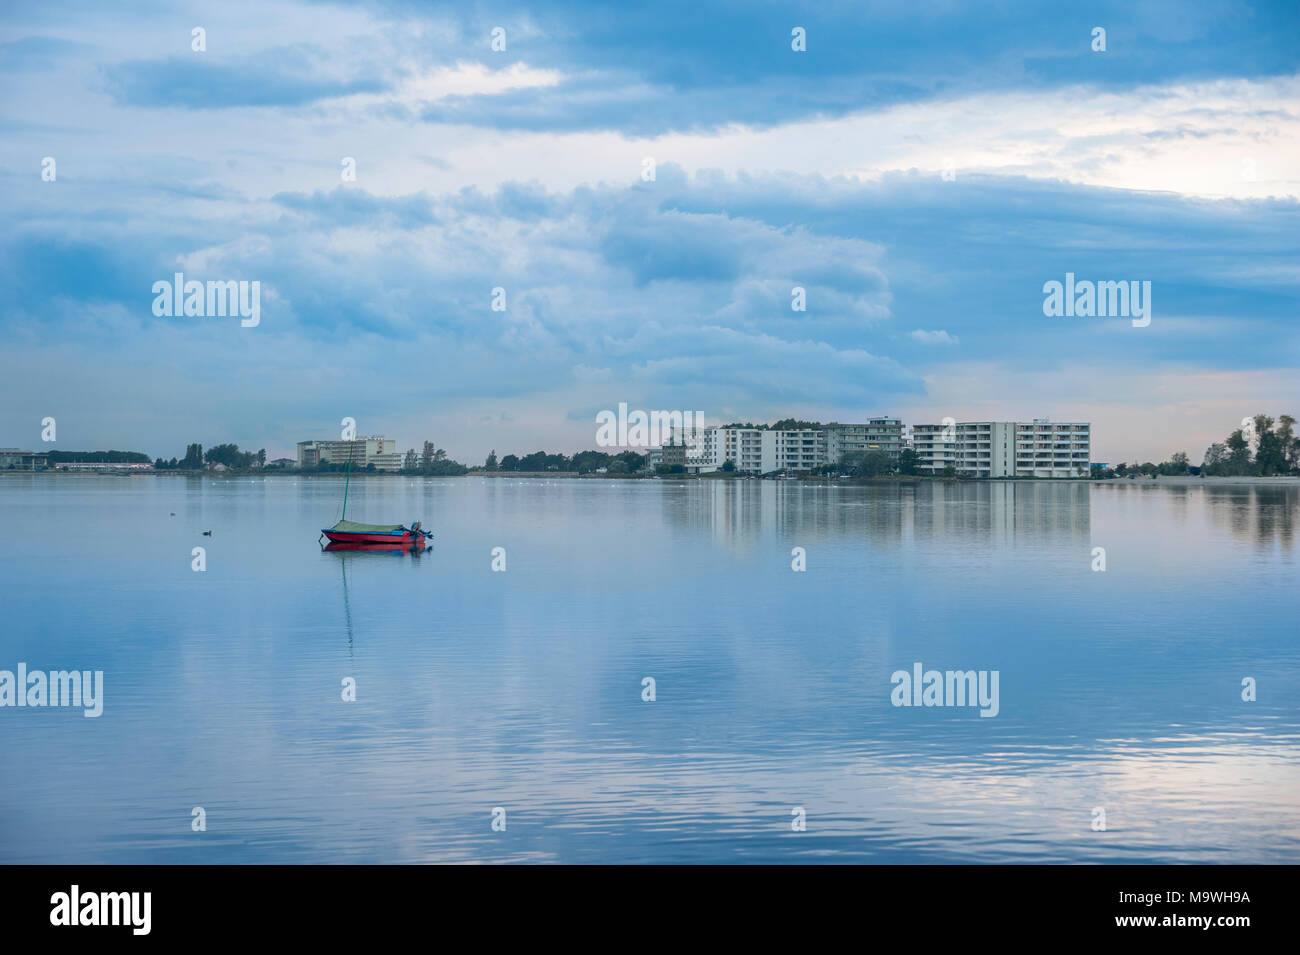 Inland lake, Heiligenhafen, Baltic Sea, Schleswig-Holstein, Germany, Europe Stock Photo